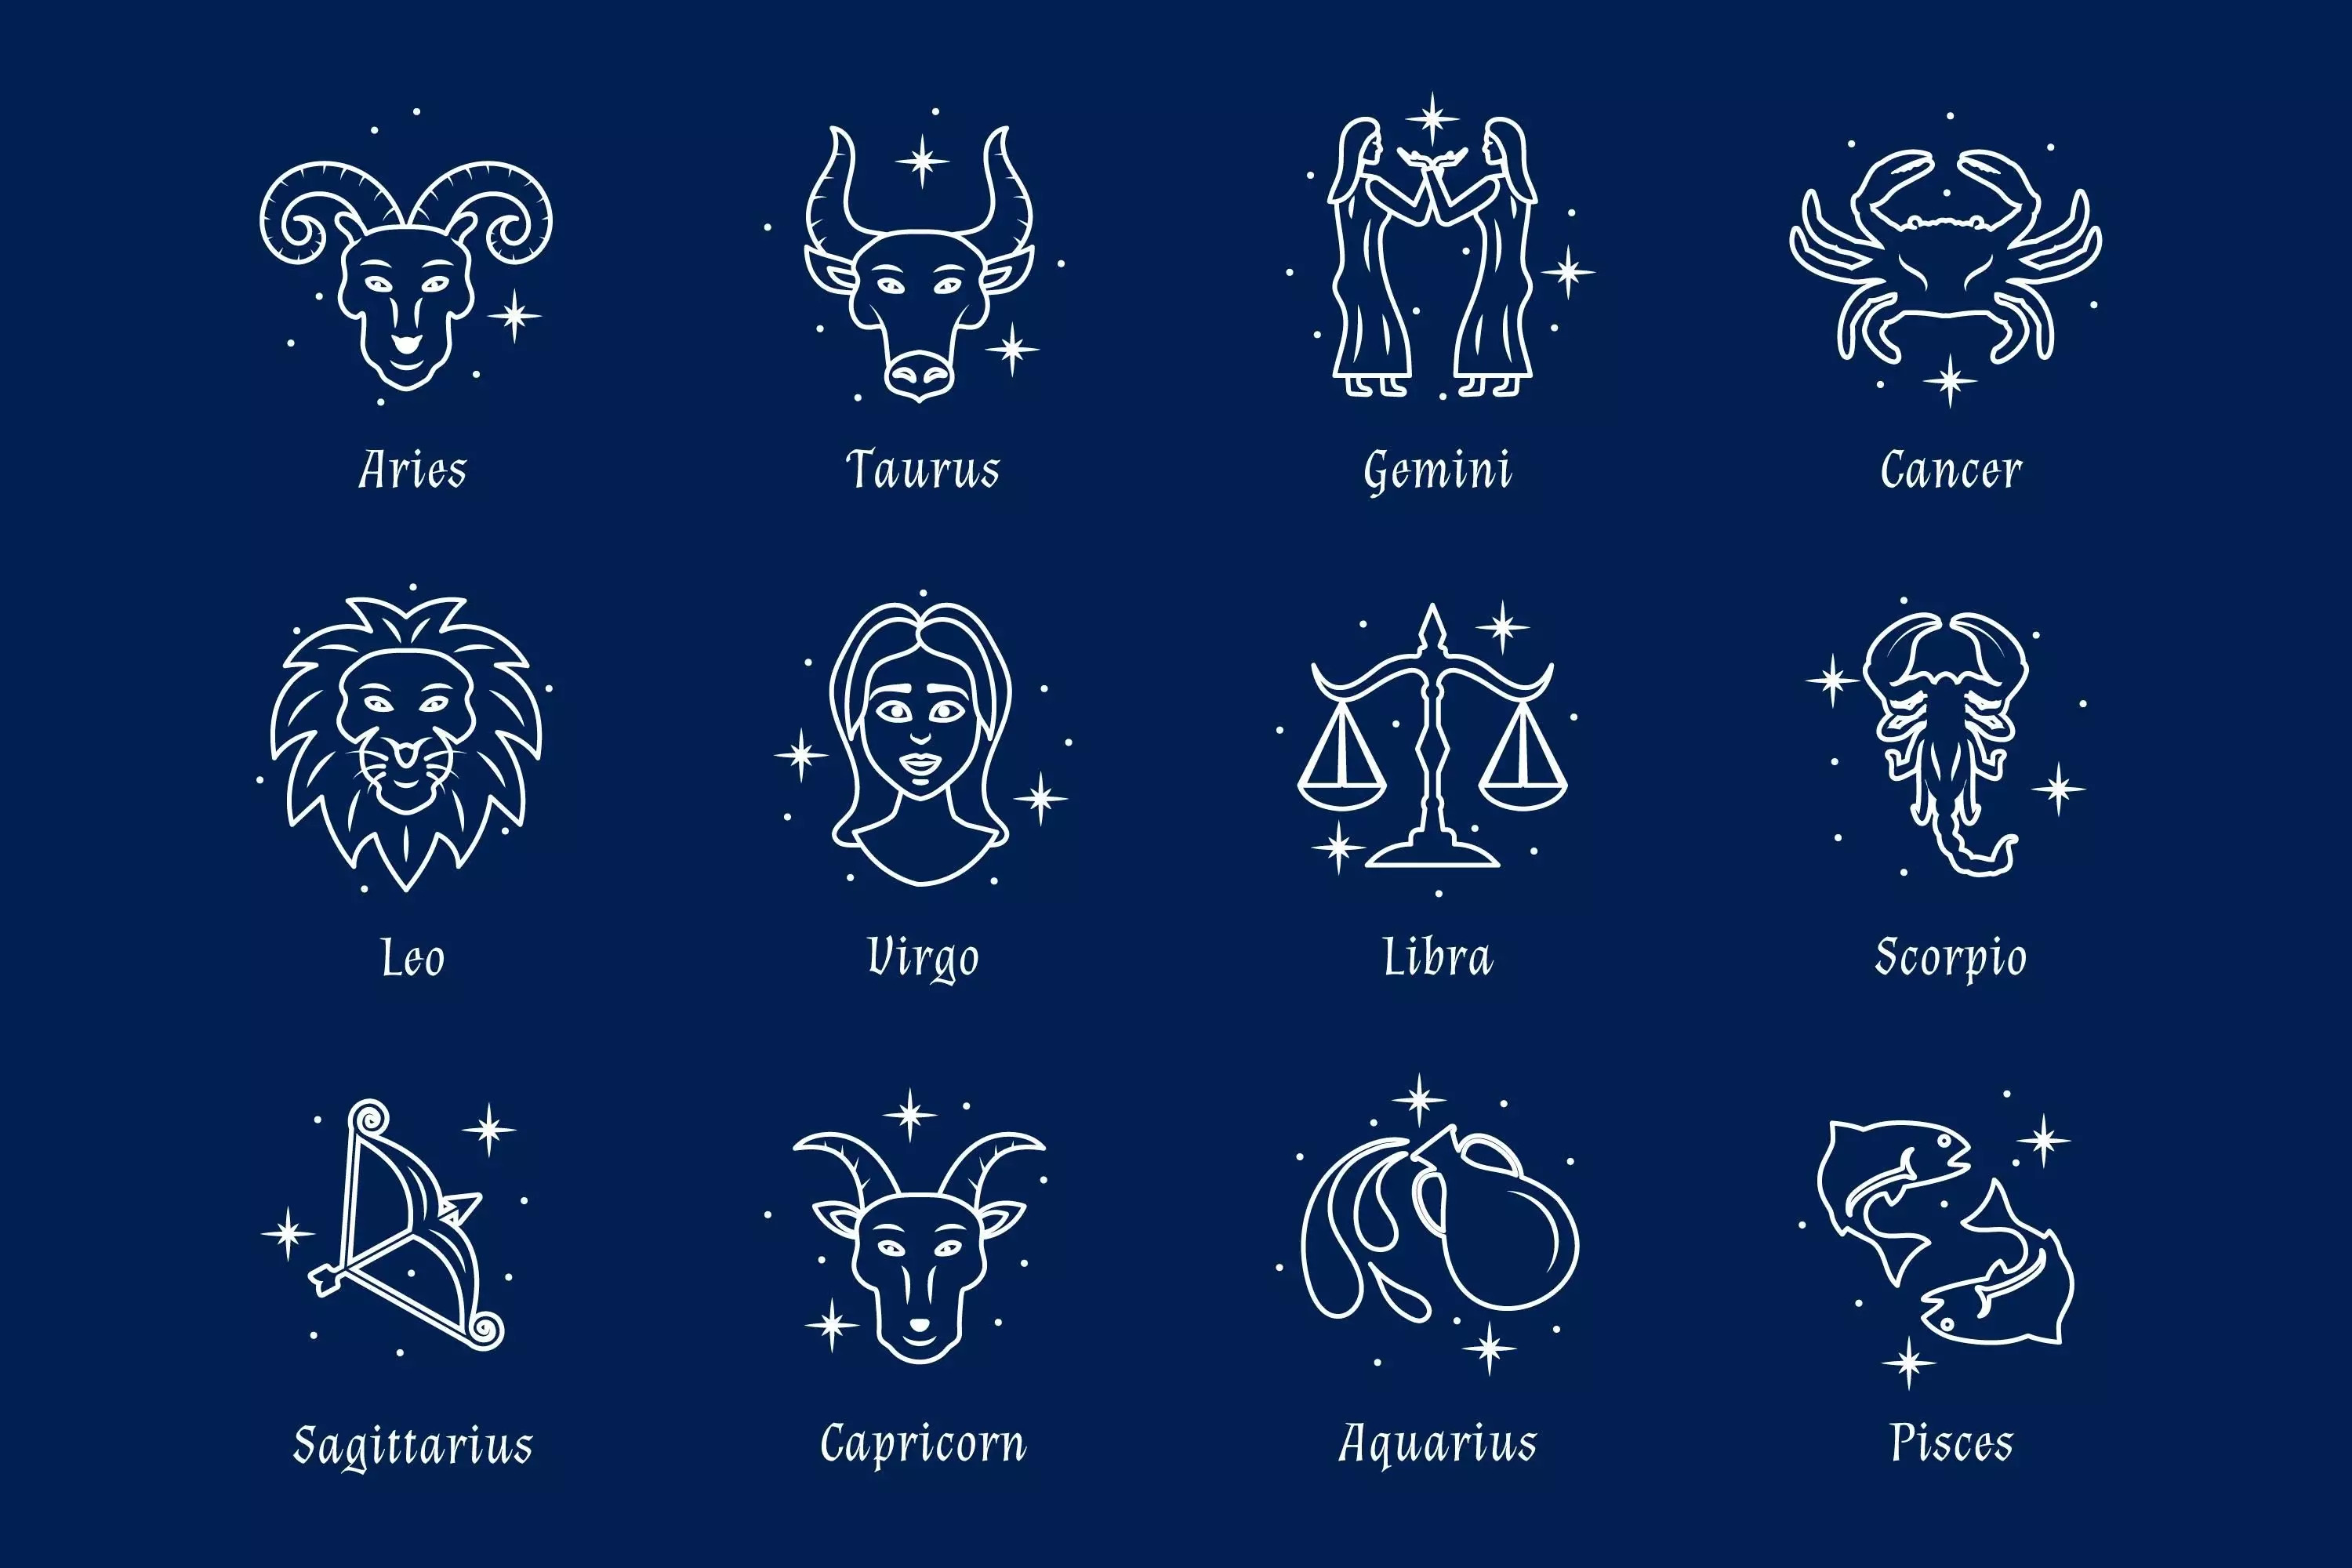 Kepribadian Menurut Zodiak, Kamu yang Mana?